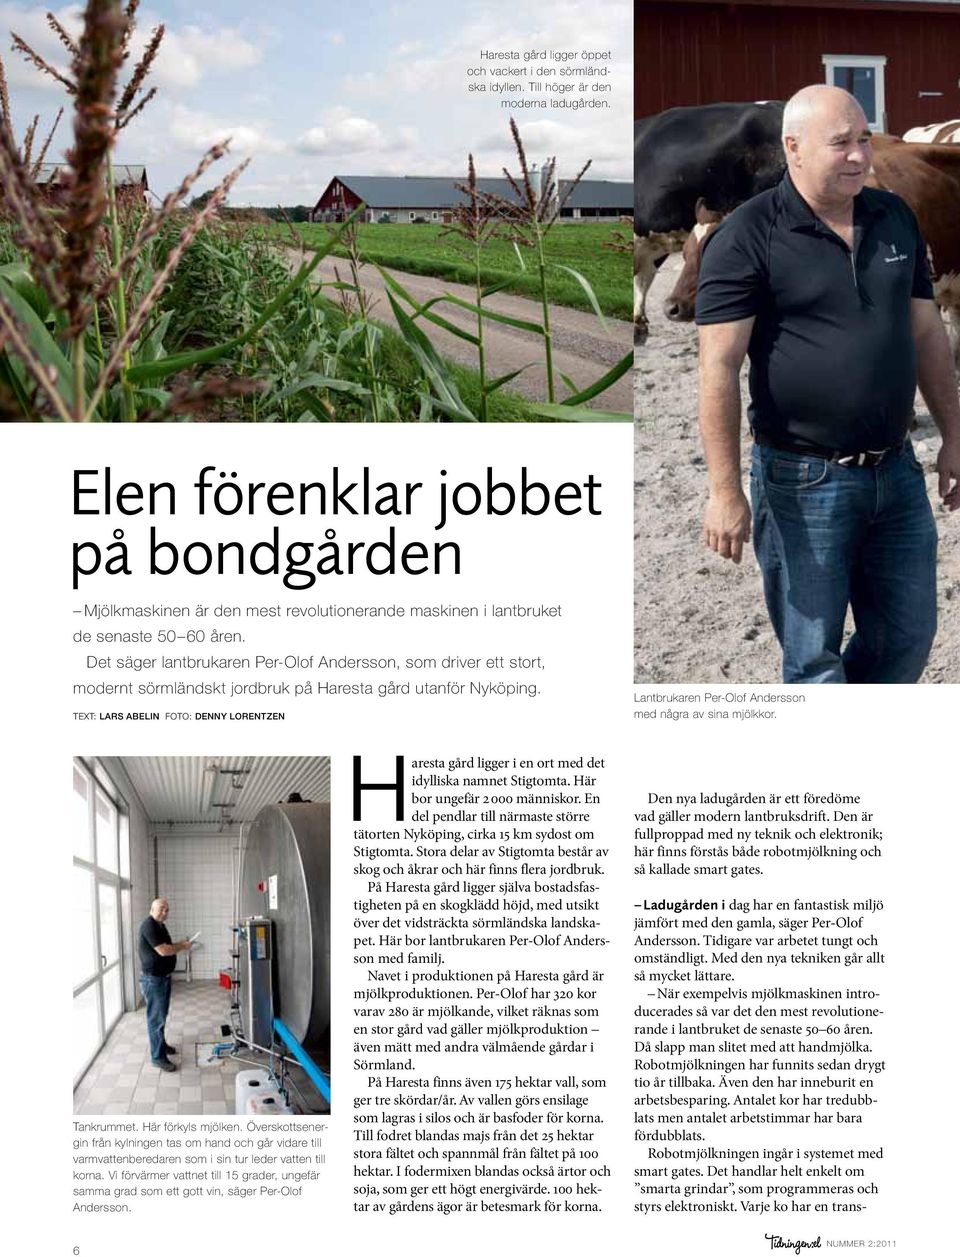 Det säger lantbrukaren Per-Olof Andersson, som driver ett stort, modernt sörmländskt jordbruk på Haresta gård utanför Nyköping.